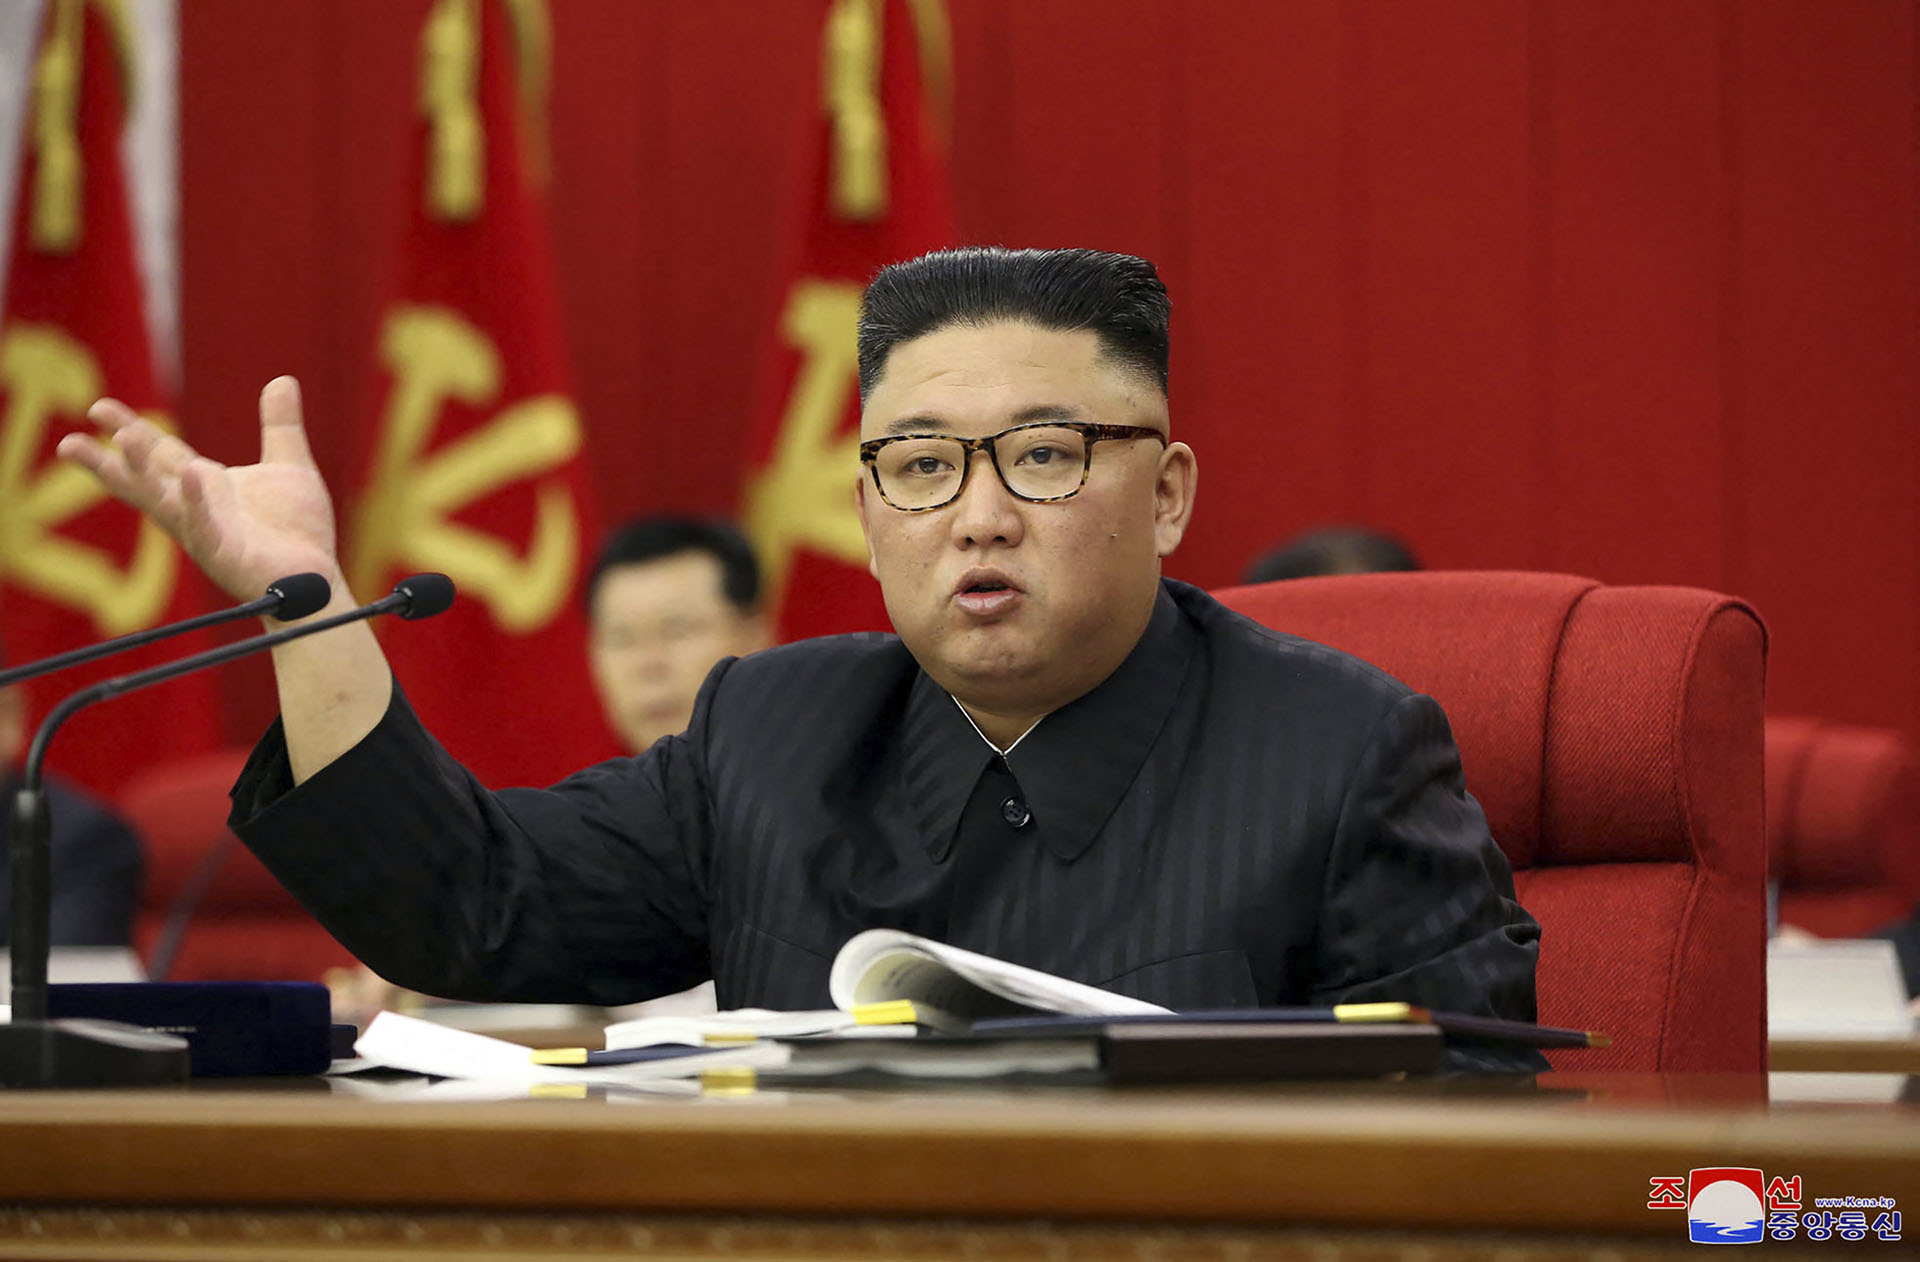 Zokogtak az észak-koreaiak, amikor meglátták, Kim Dzsong Un hogy lefogyott